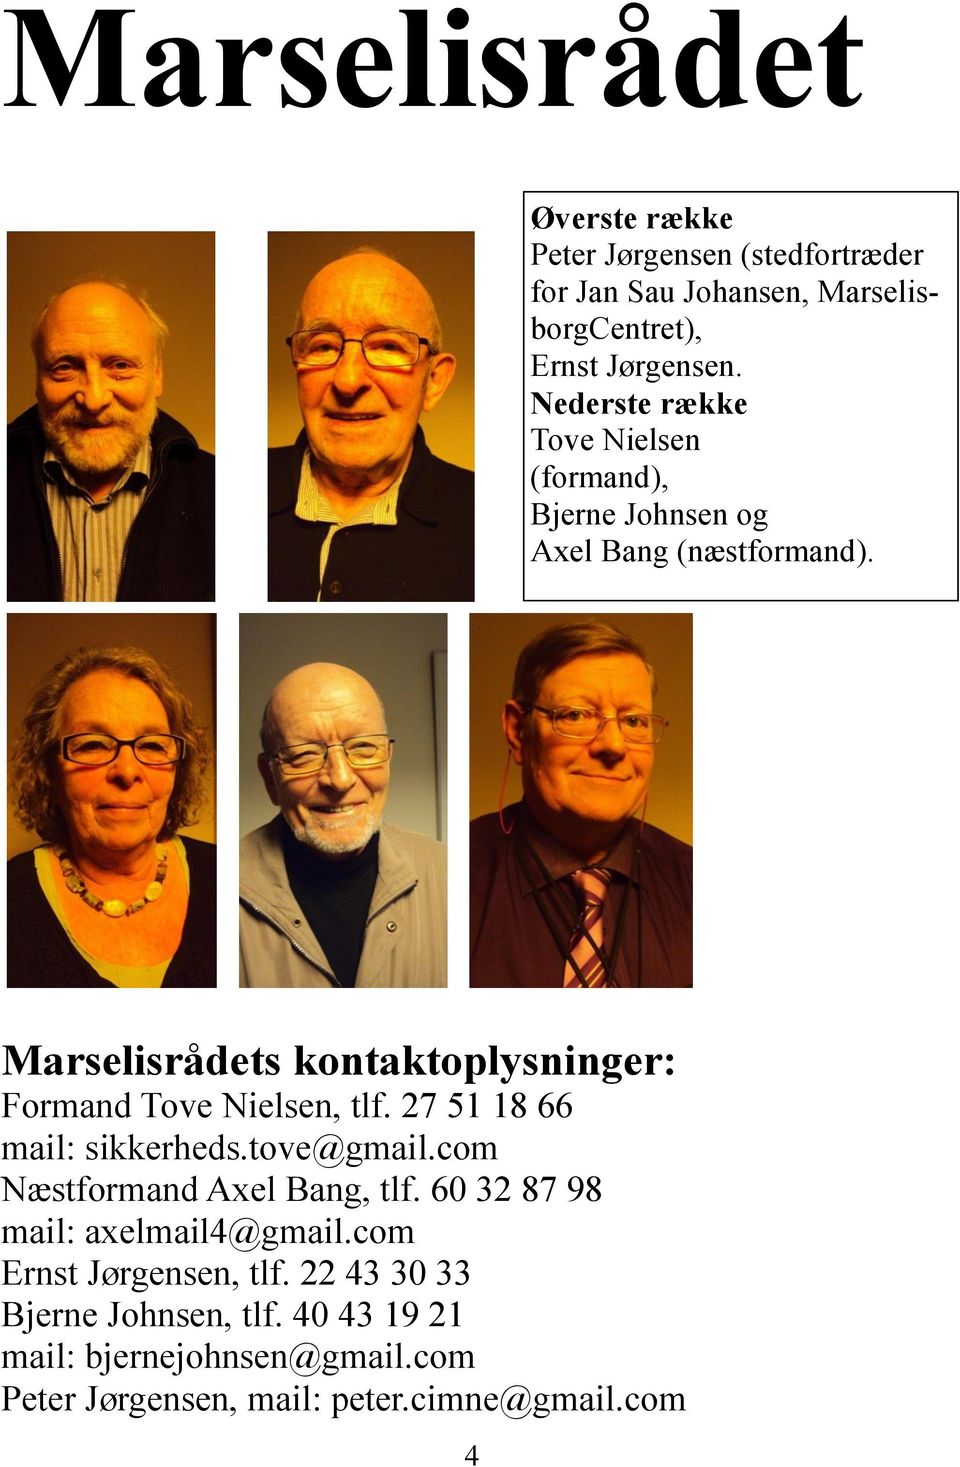 Marselisrådets kontaktoplysninger: Formand Tove Nielsen, tlf. 27 51 18 66 mail: sikkerheds.tove@gmail.